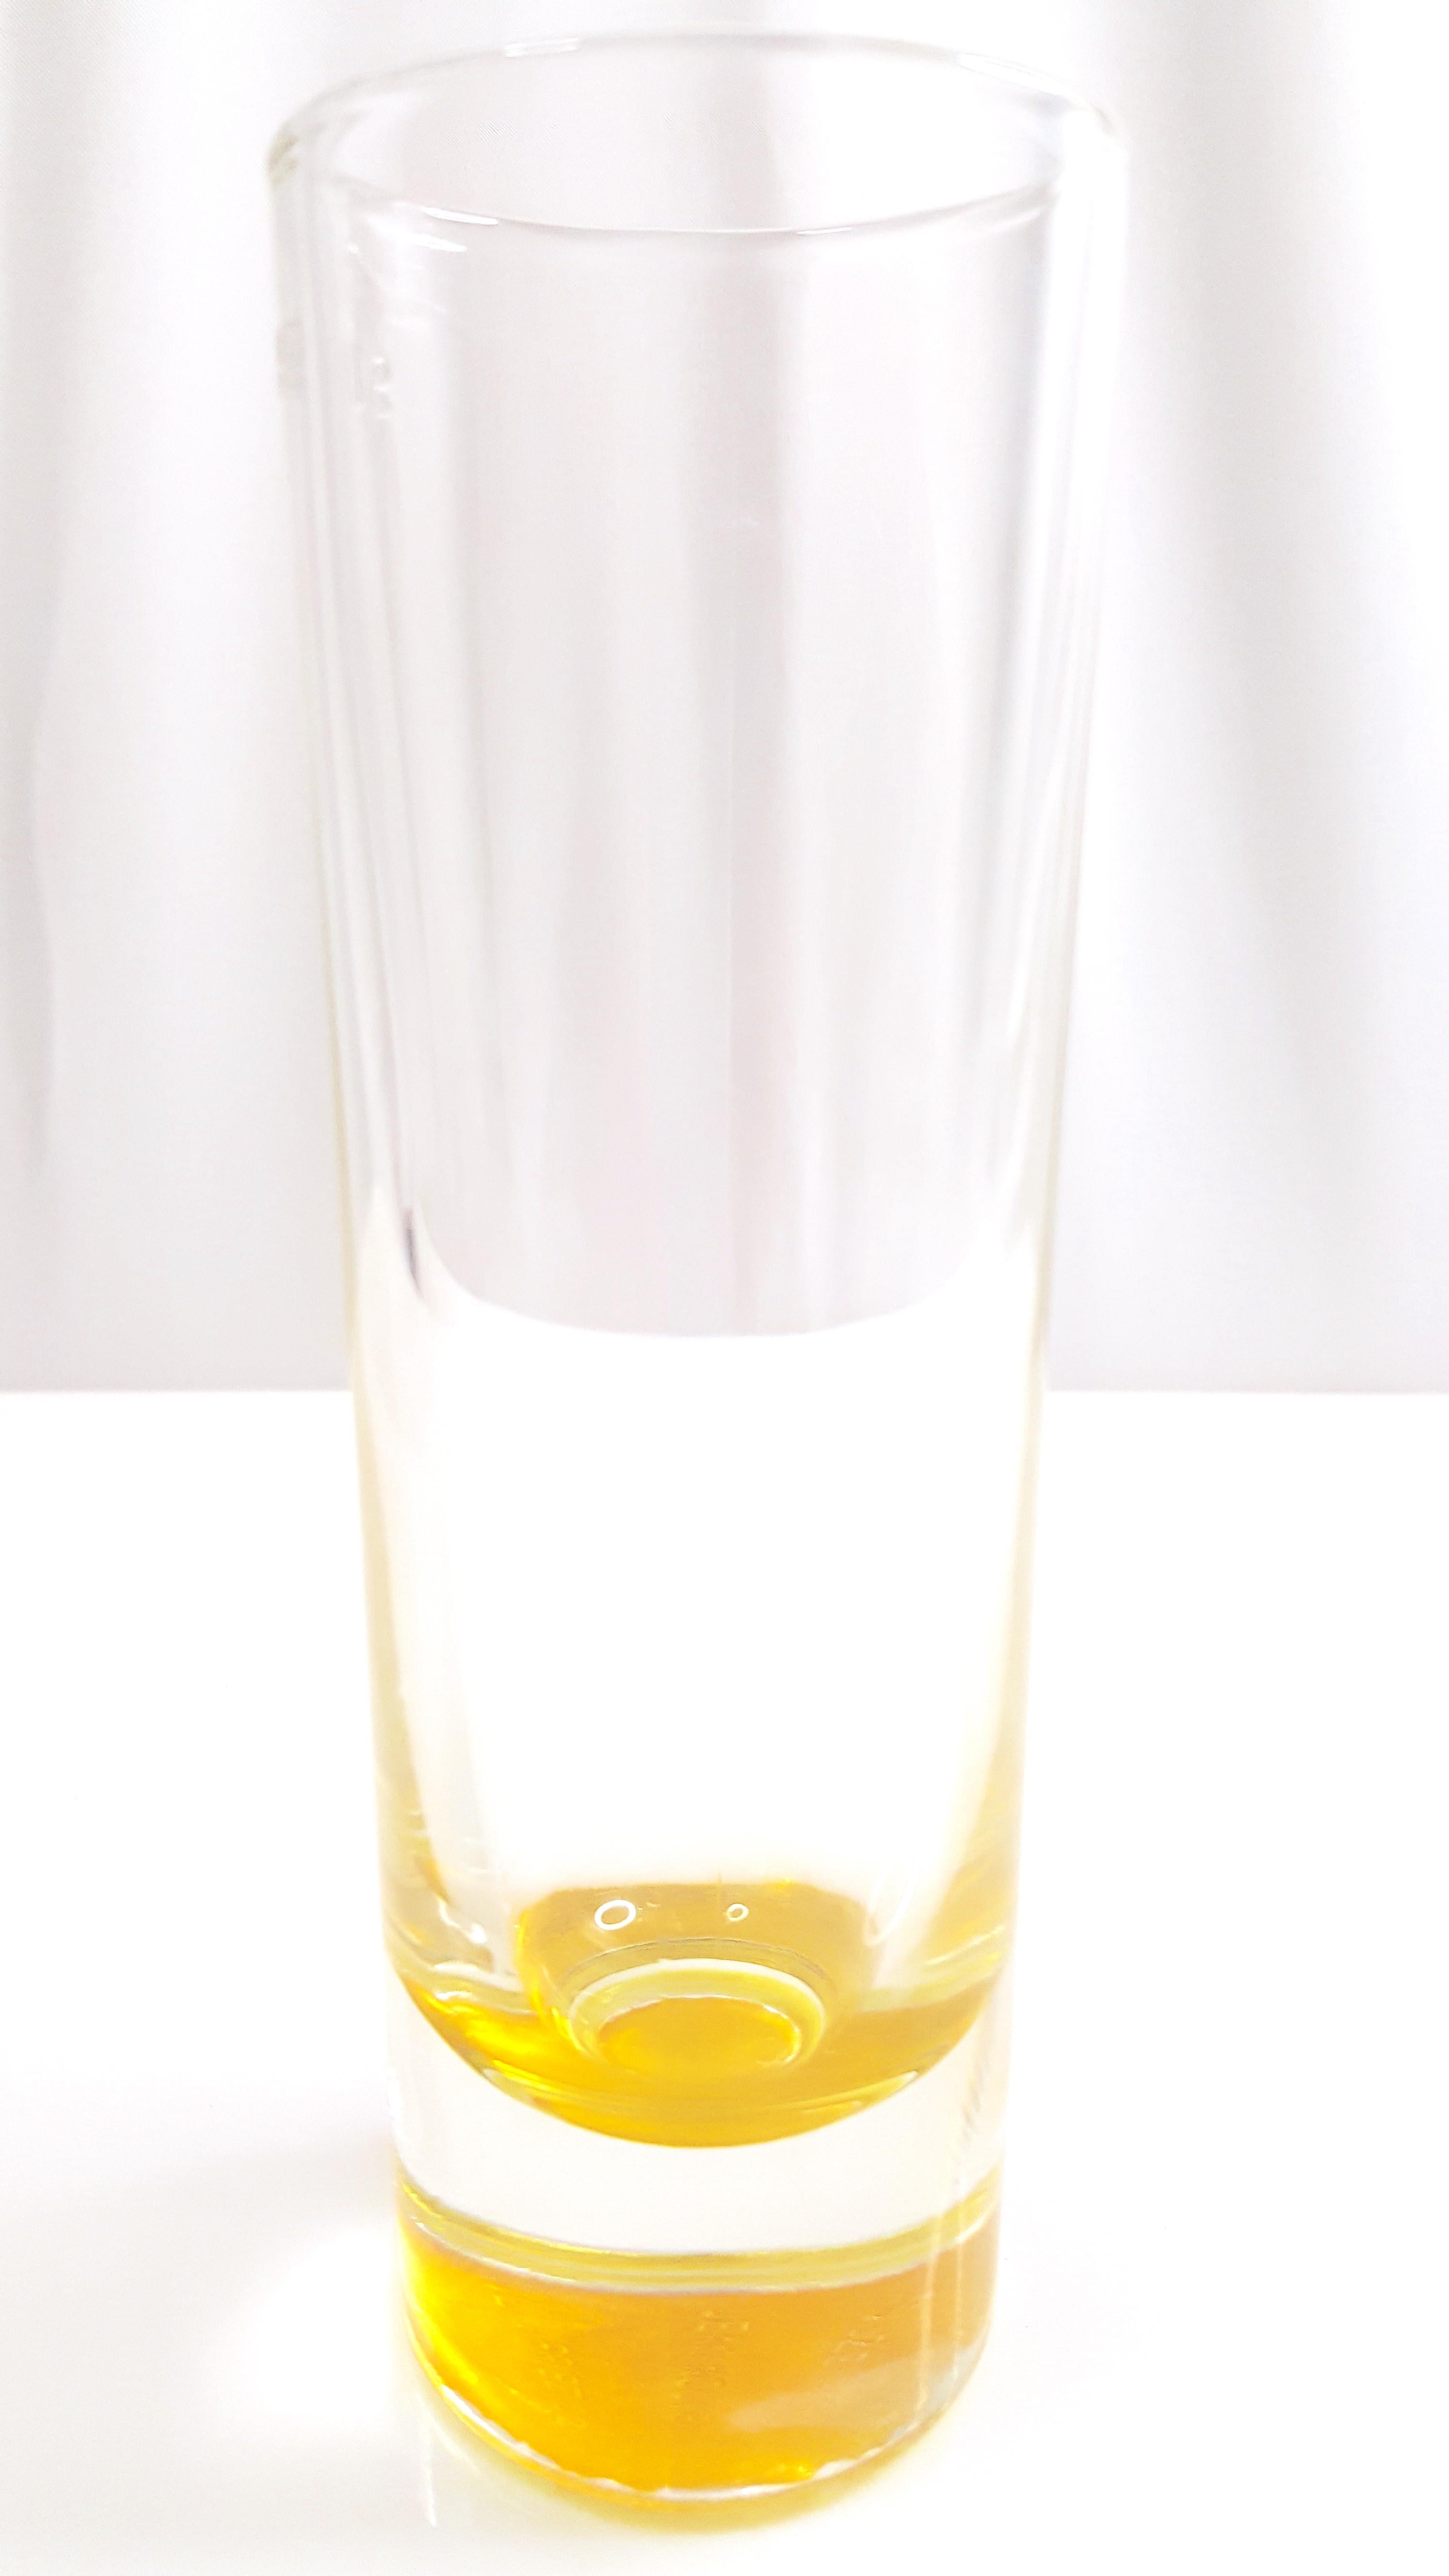 Der französische Architekt und Möbeldesigner Jean Nouvel wurde beauftragt, diese Vase oder dieses Aperitifglas mit gelbem Akzent für einen der ältesten und beliebtesten Kräuterliköre Frankreichs, Suze, zu entwerfen, einen Bitter aus Enzianwurzeln,